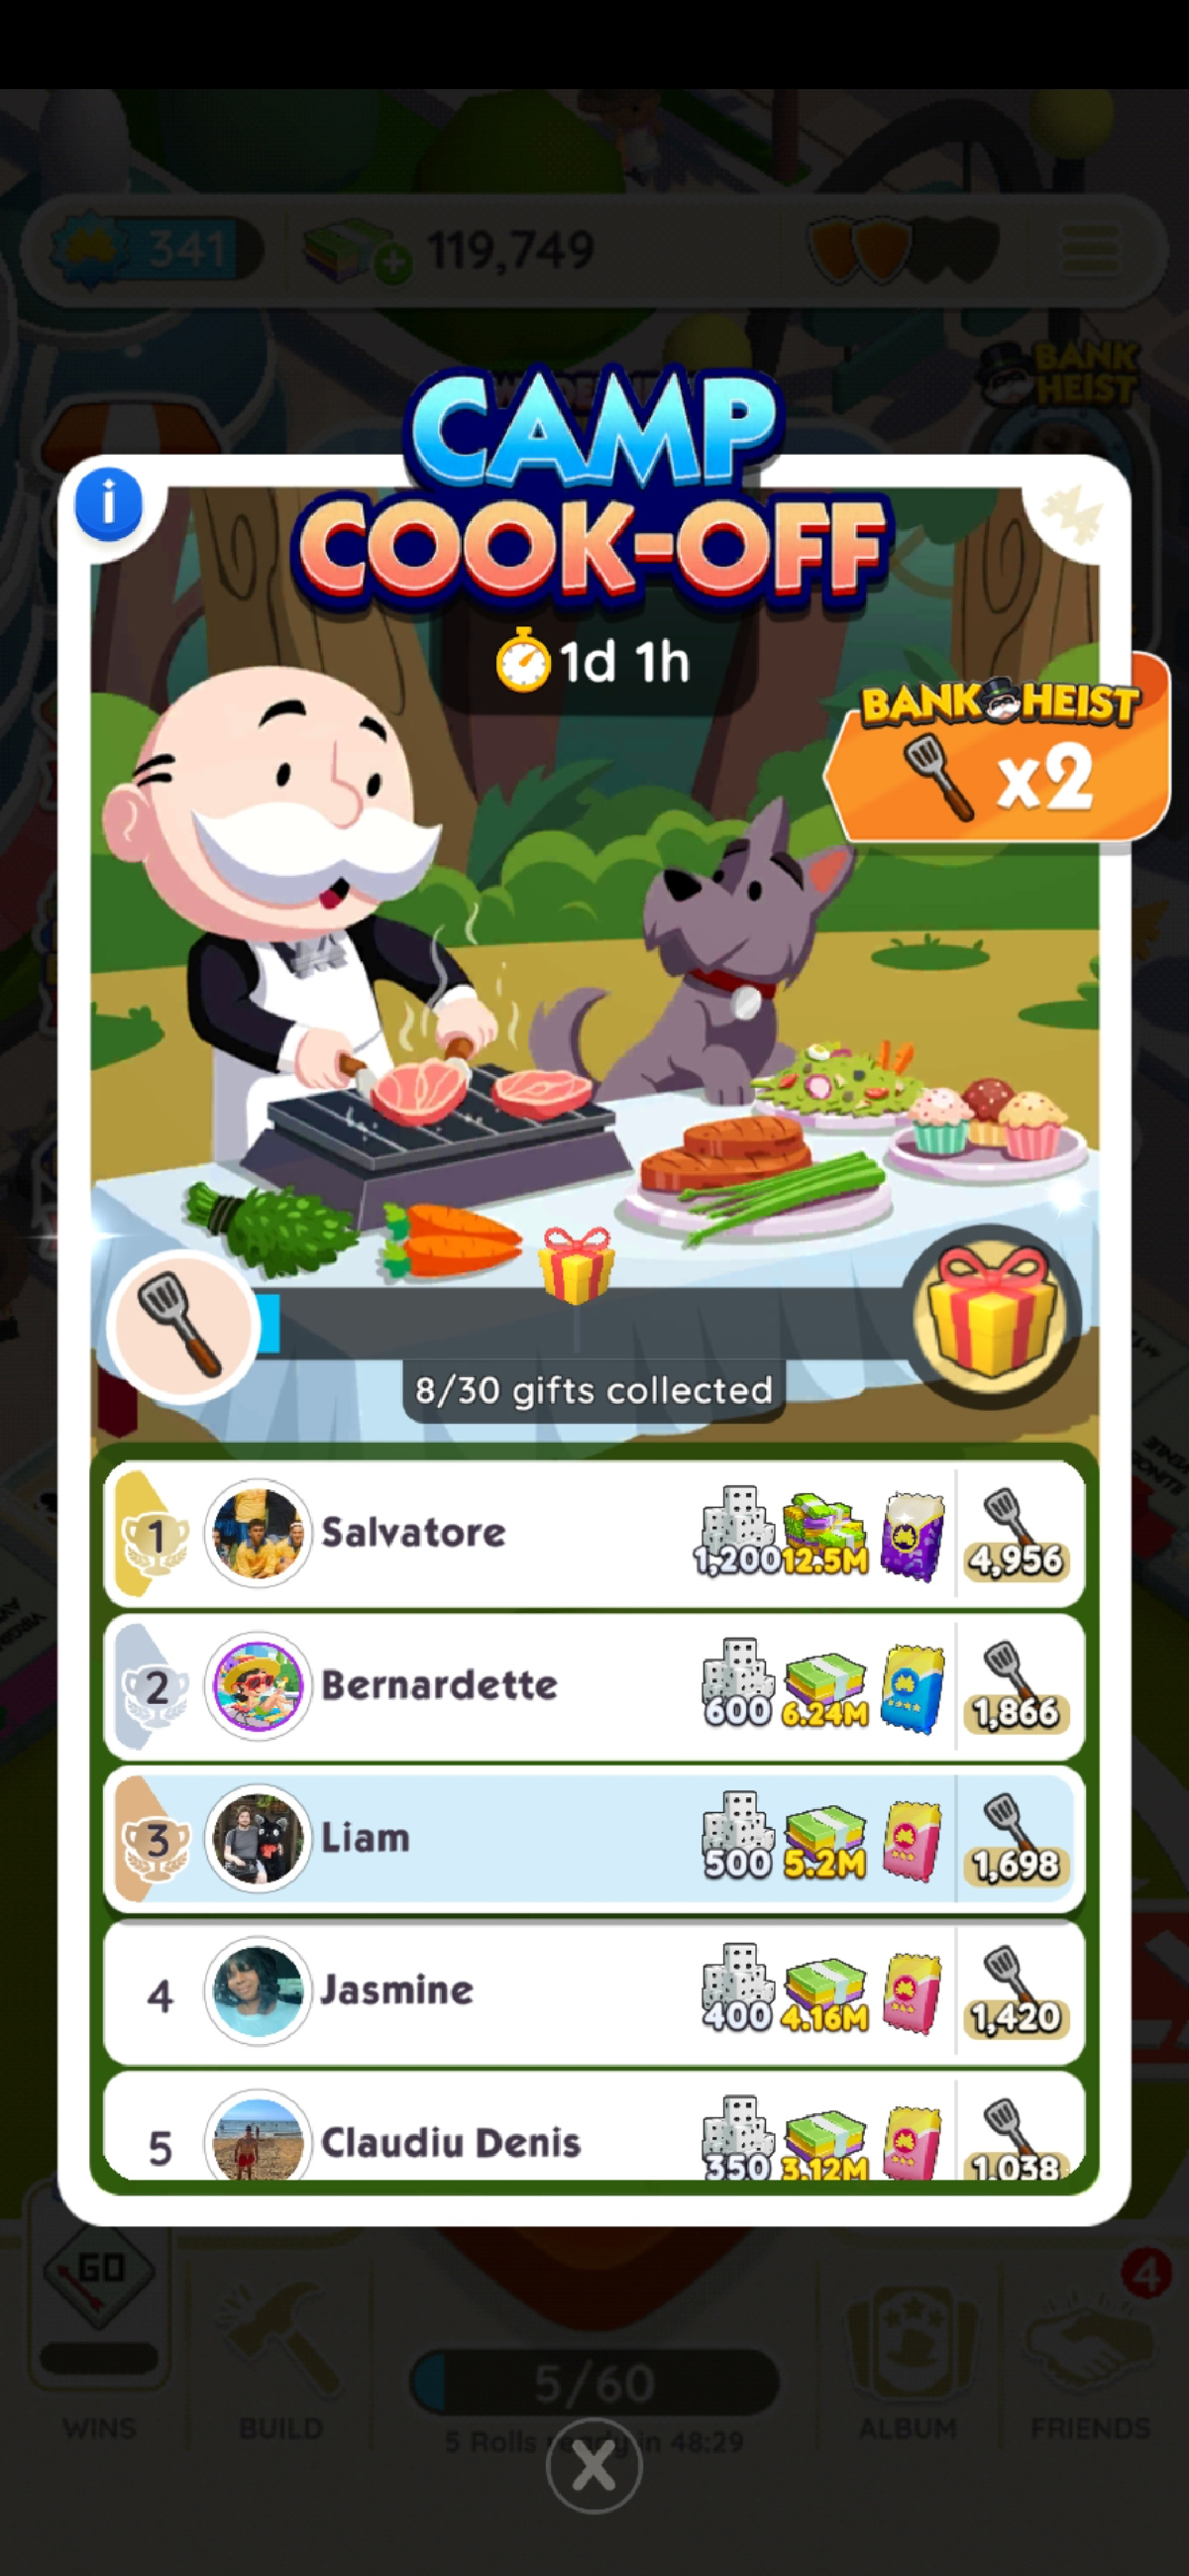 Capture d'écran montrant l'écran Camp Cook-Off pour Monopoly GO dans le cadre d'un article sur les récompenses de l'événement et comment les obtenir.